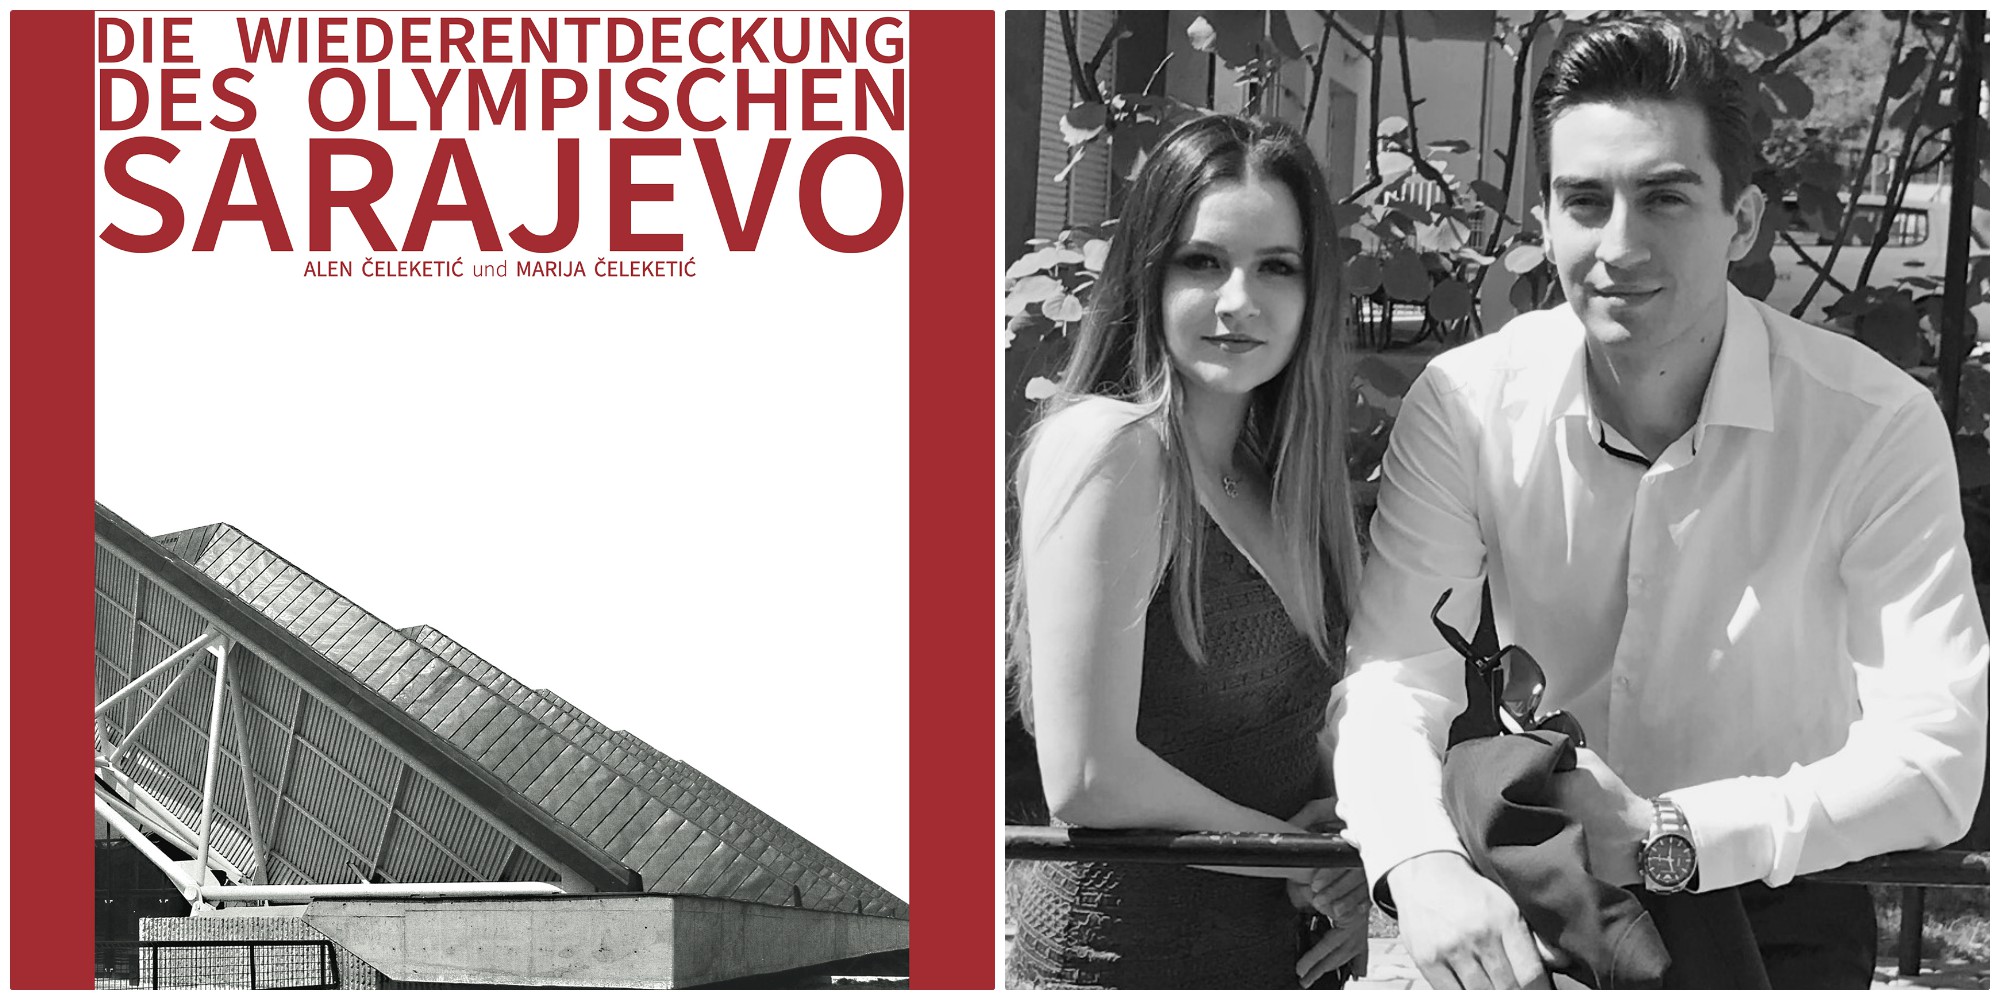 Mladi arhitekti Alen i Marija Čeleketić u Austriji objavili knjigu “Ponovno otkriće olimpijskog Sarajeva”